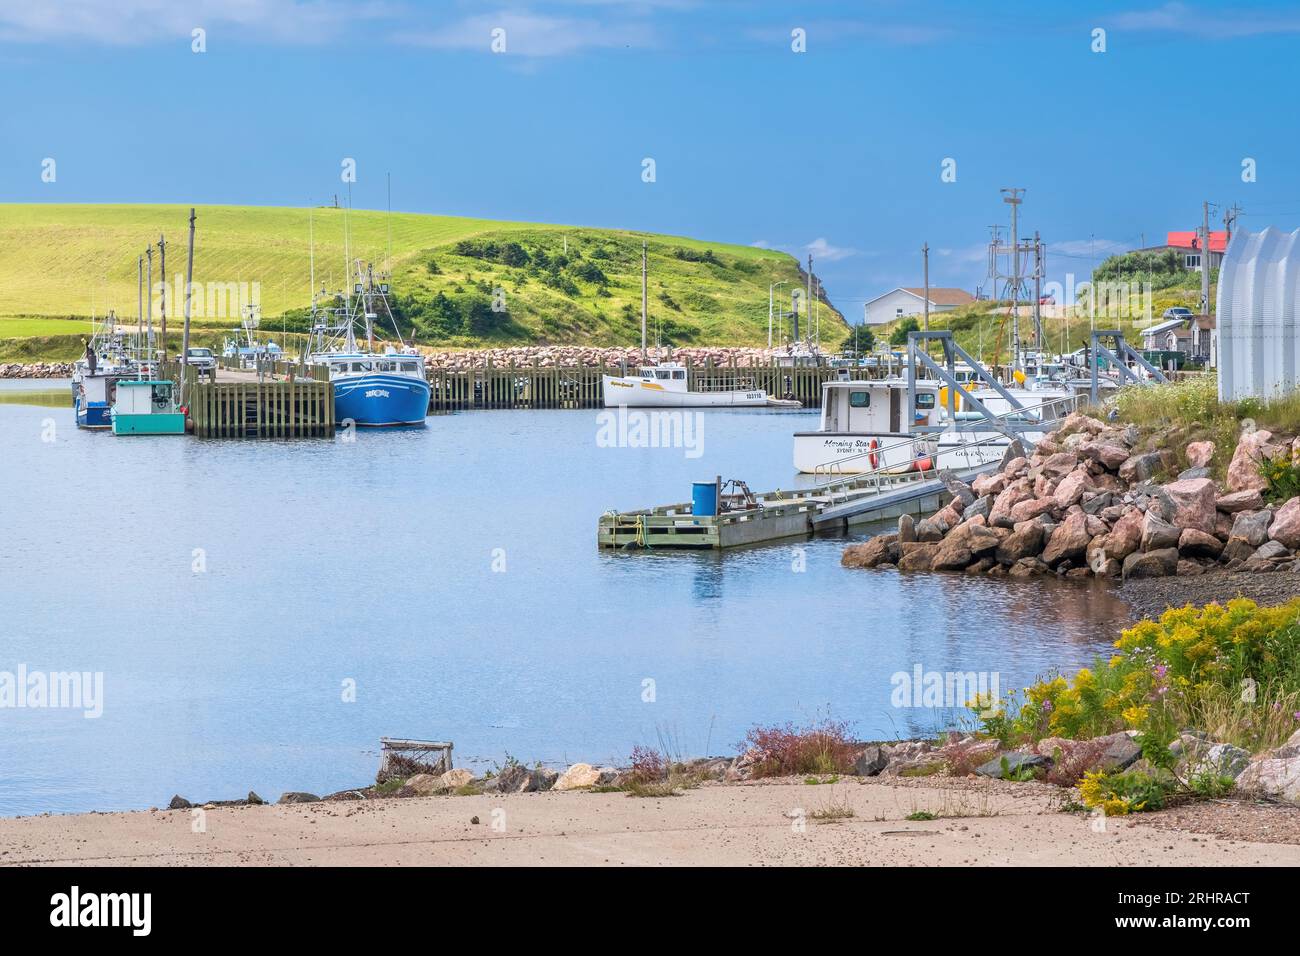 Bay St Lawrence è un piccolo villaggio di pescatori sulla punta settentrionale dell'isola di Cape Breton. Il villaggio ha un porto molto pittoresco con barche colorate Foto Stock